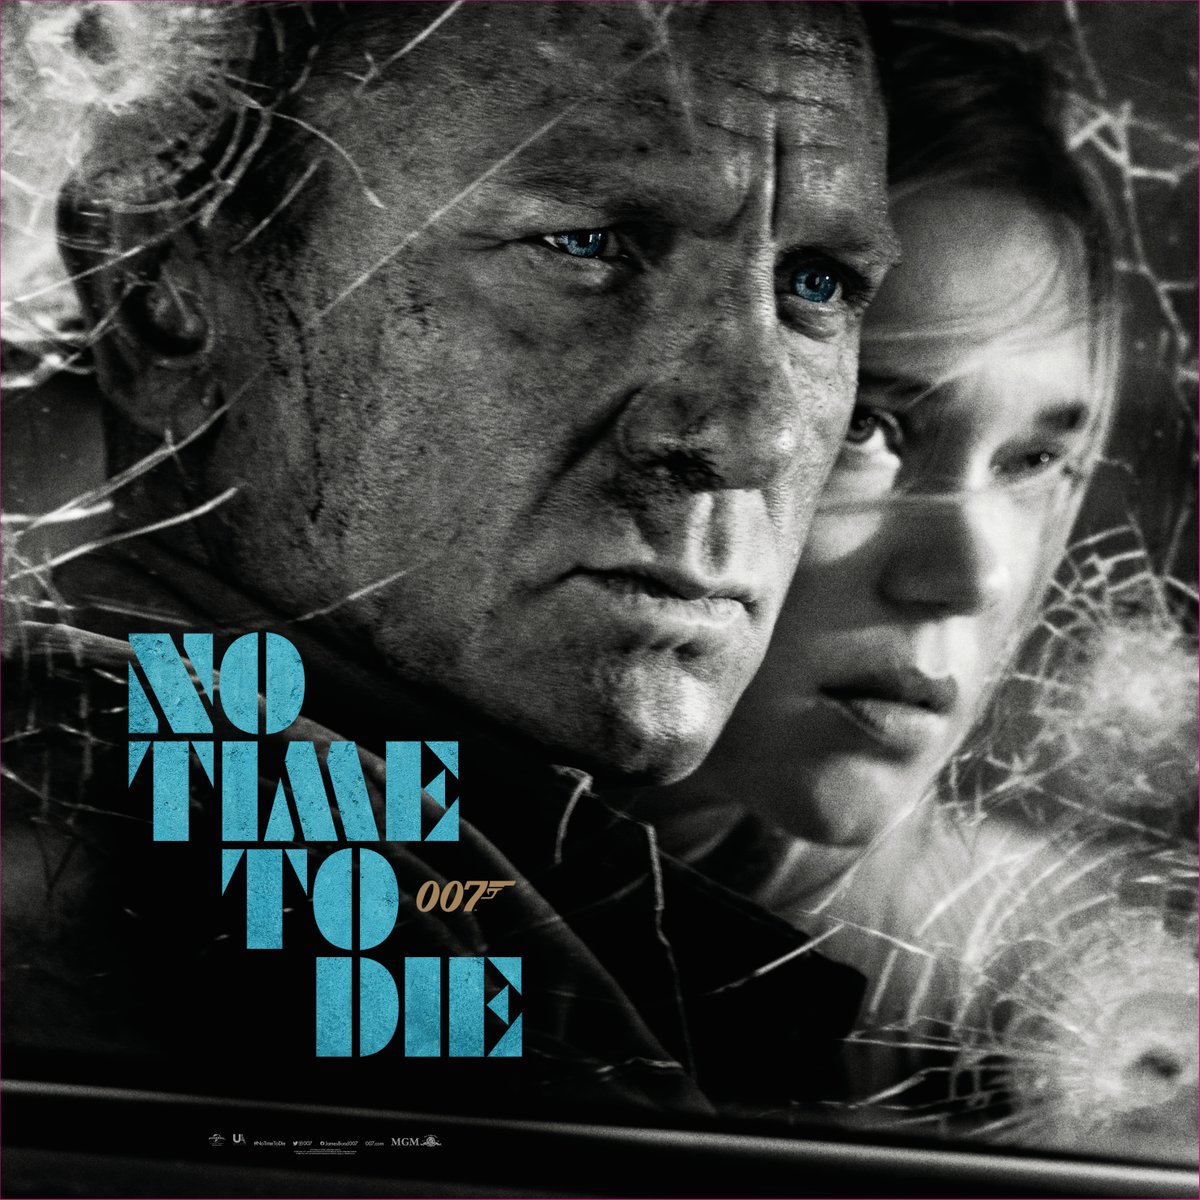 Даже 007 не хочет связываться с коронавирусом, так что премьеру «Не время умирать» отложили на 7 месяцев